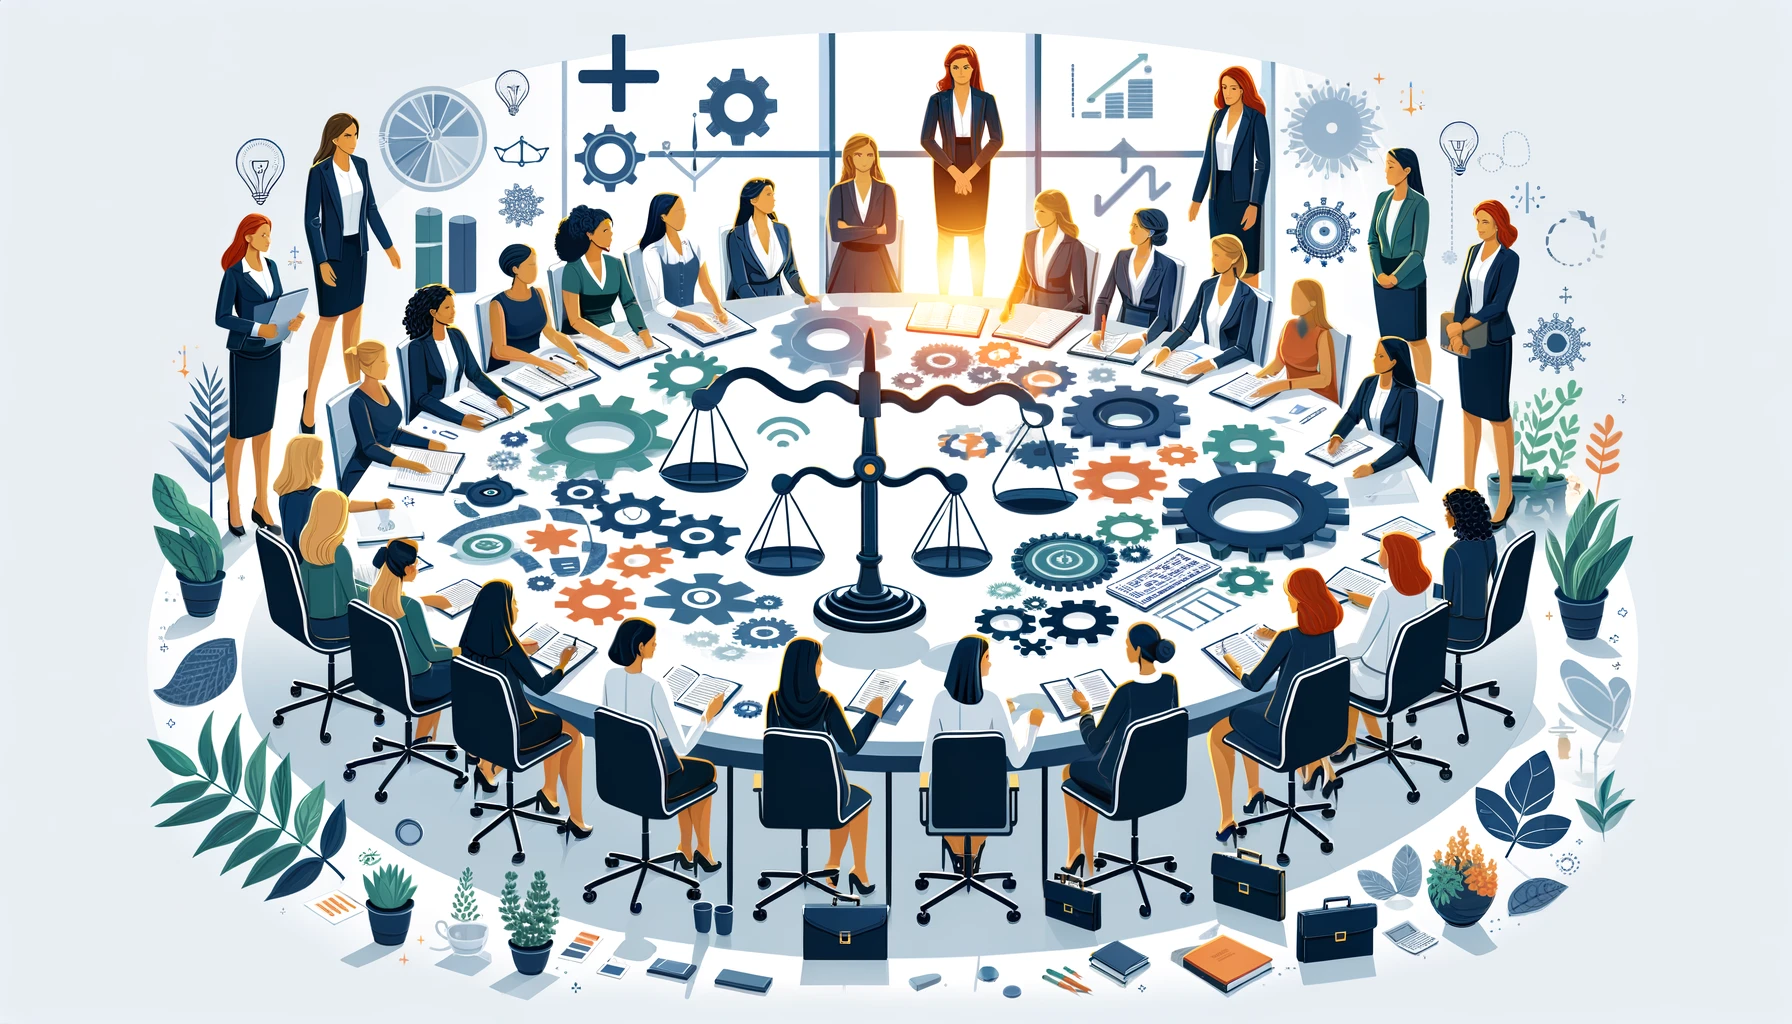 Frau­en im Betriebs­rat: Die trei­ben­de Kraft hin­ter der Gleich­stel­lung in Unter­neh­men